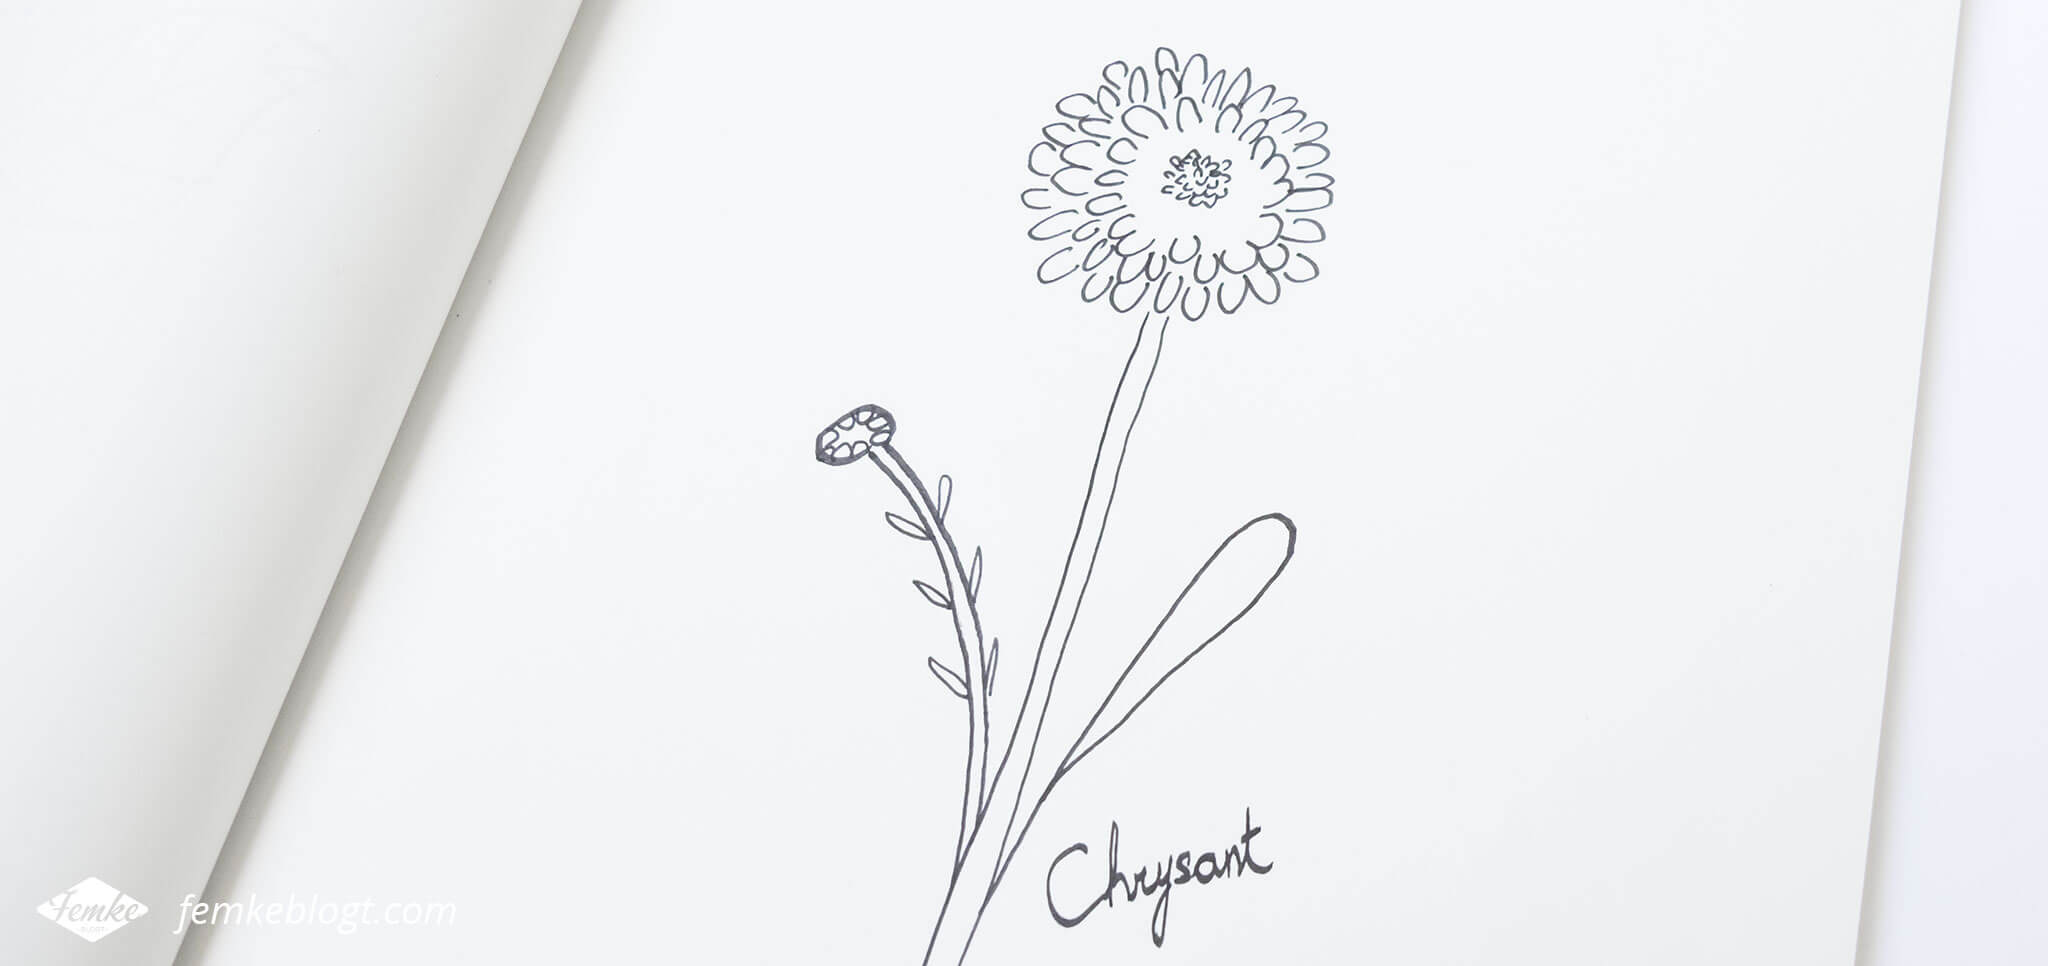 31 Dagen bloemen #3 – Chrysant